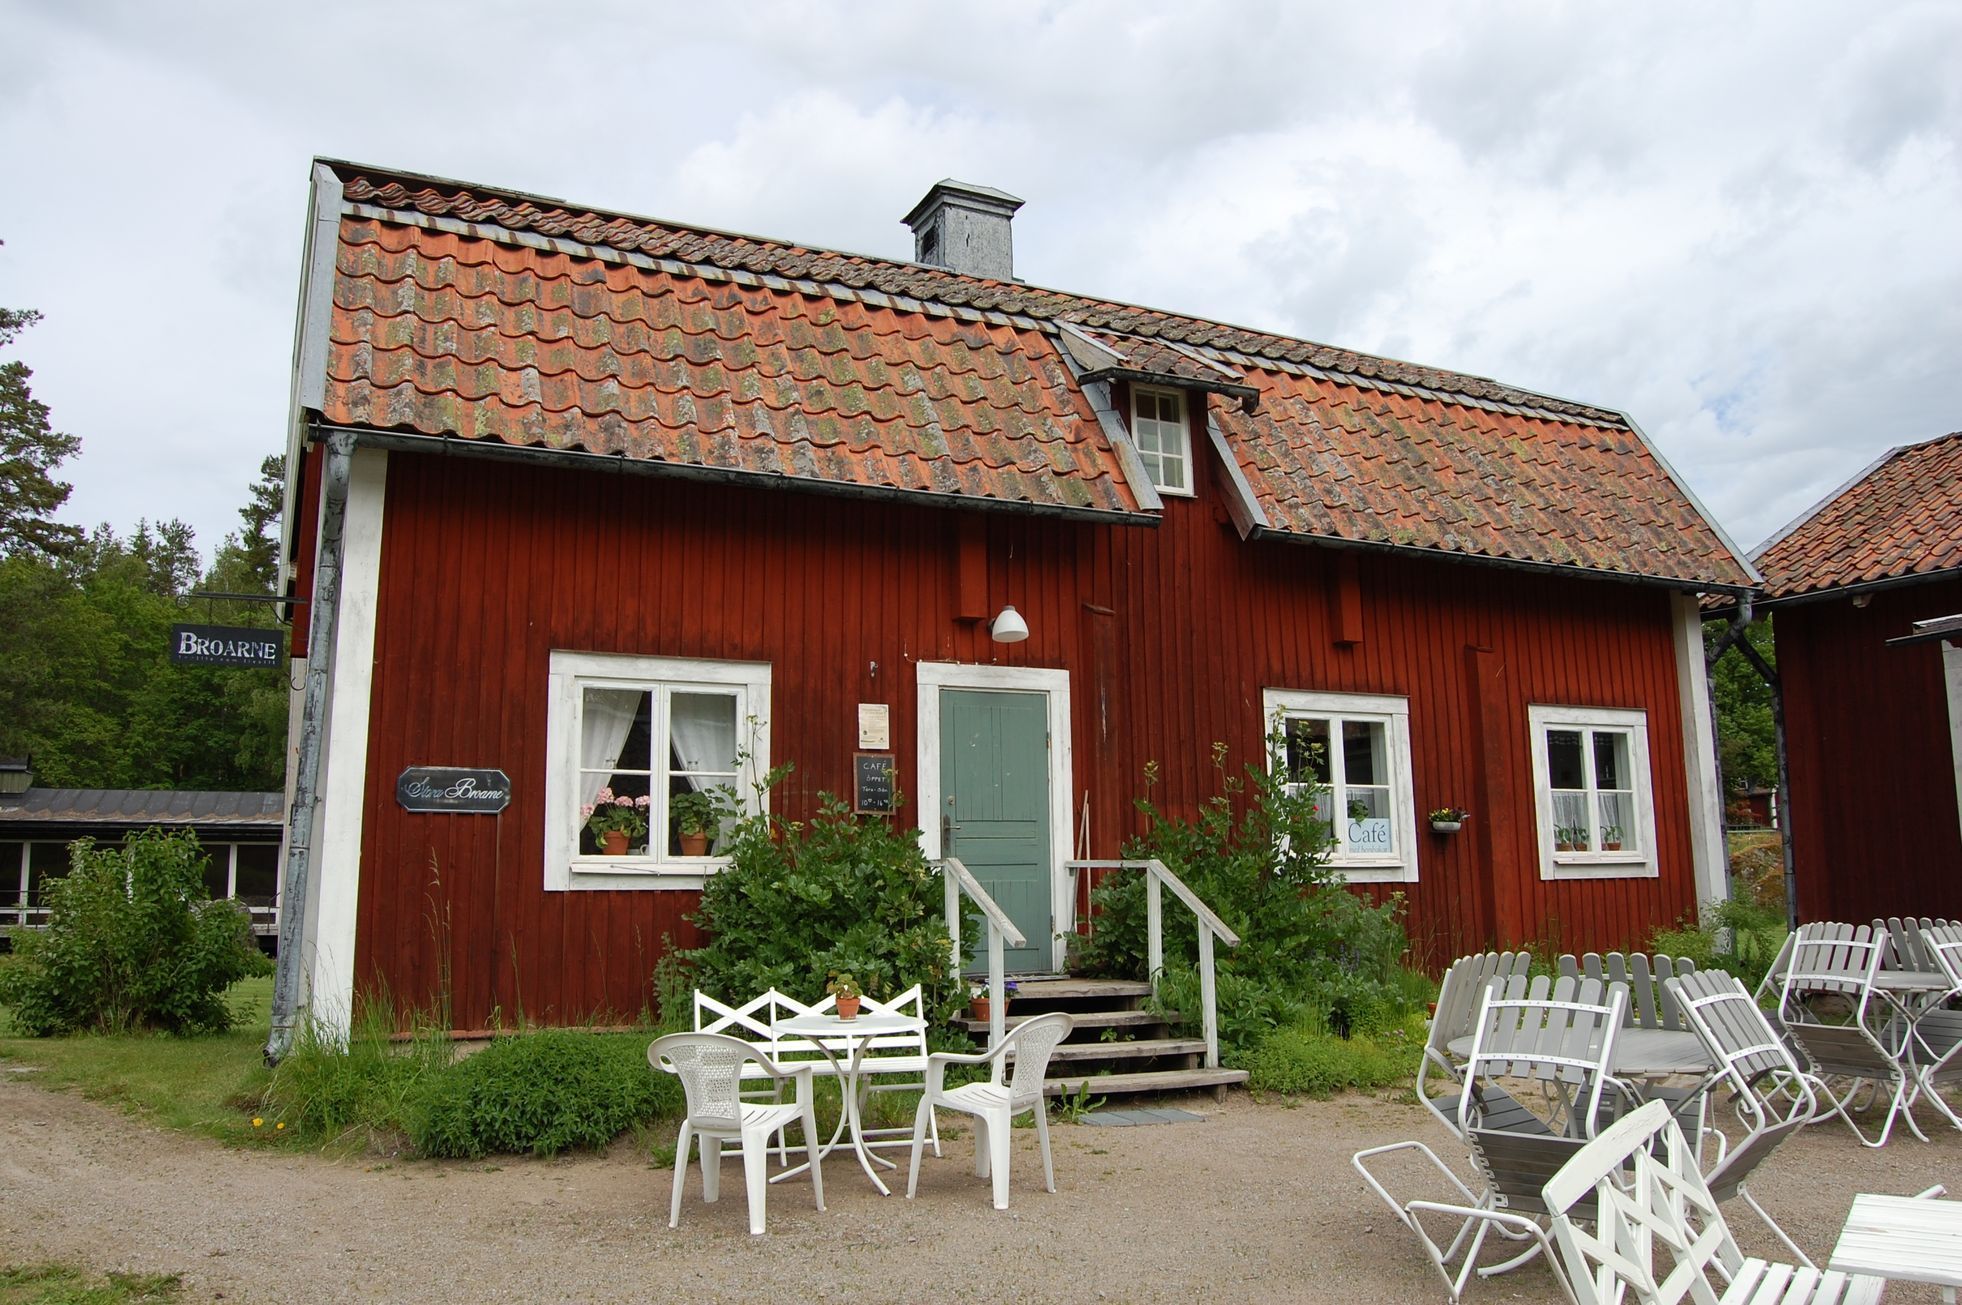 Obchod Broarne a kavárna v Sätra Brunn, Švédsko